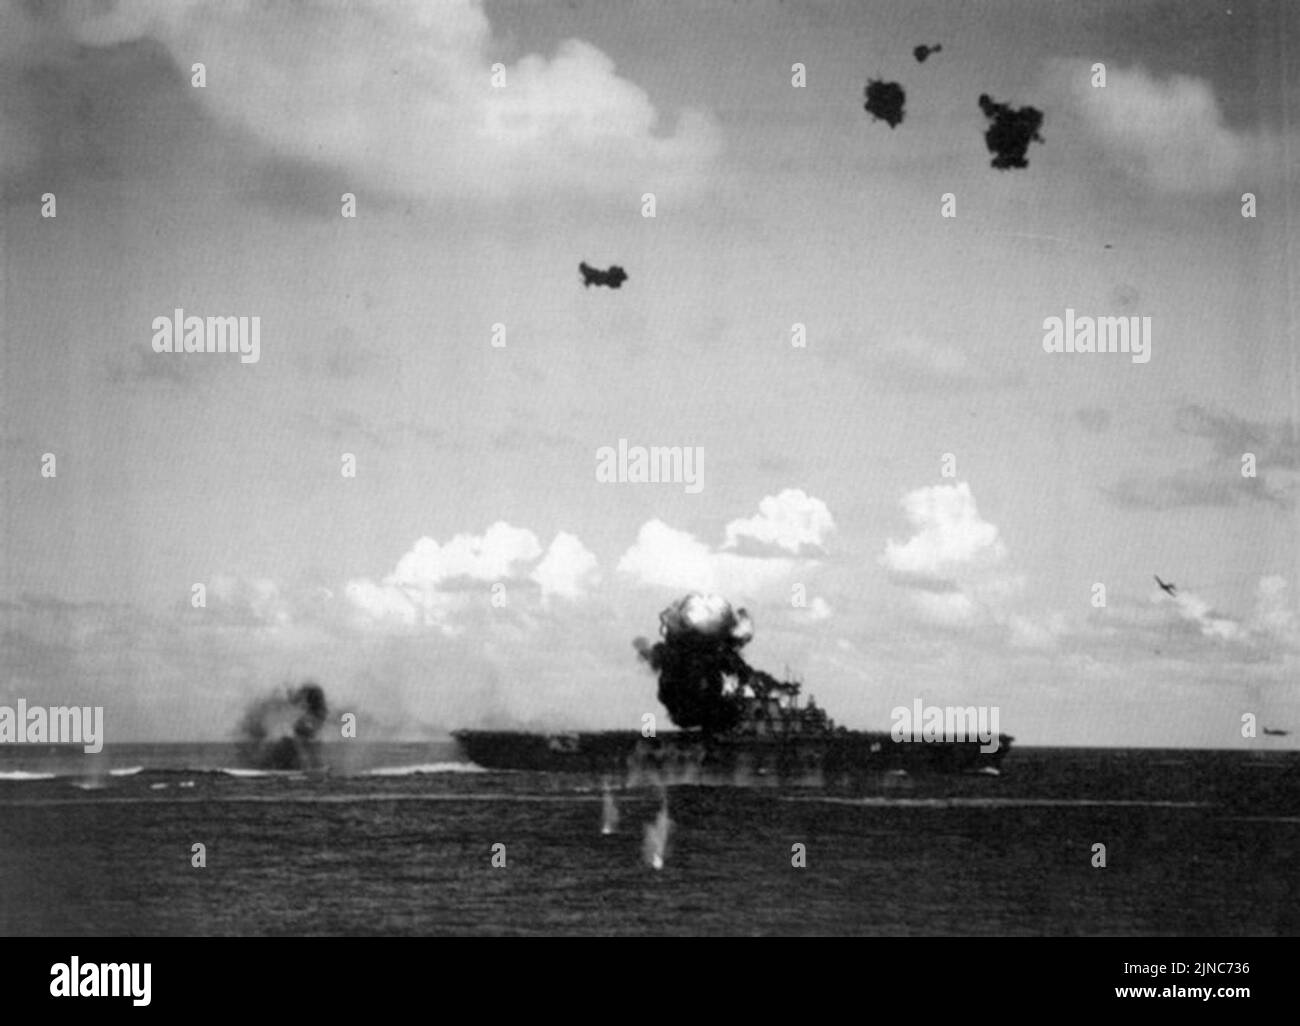 Un bombardier japonais endommagé explose sur le pont du porte-avions USS Hornet de la Marine américaine pendant la bataille de Santa Cruz, le 26 octobre 1942. Banque D'Images